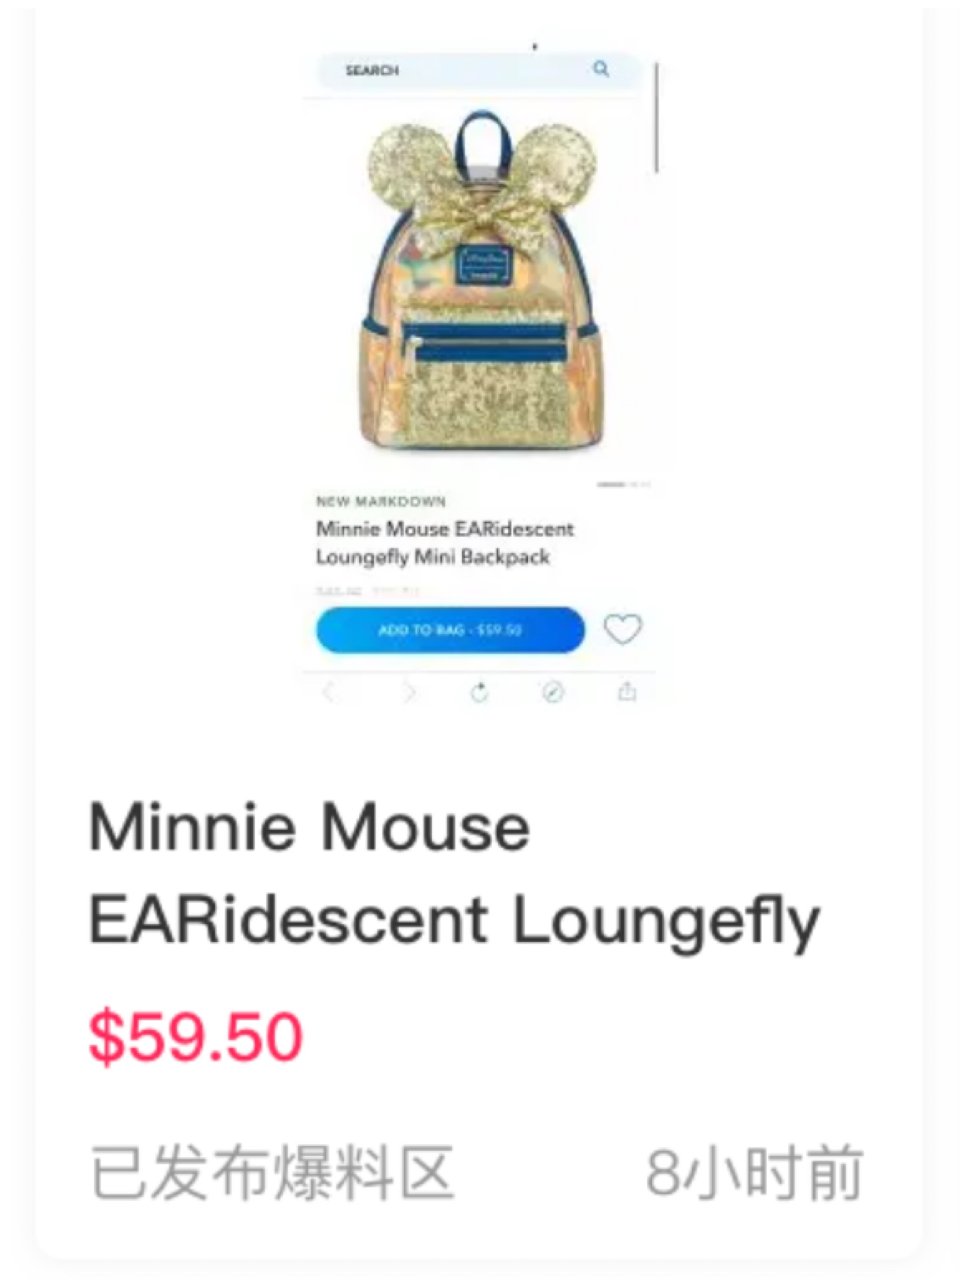 闪亮亮的Minnie背包...